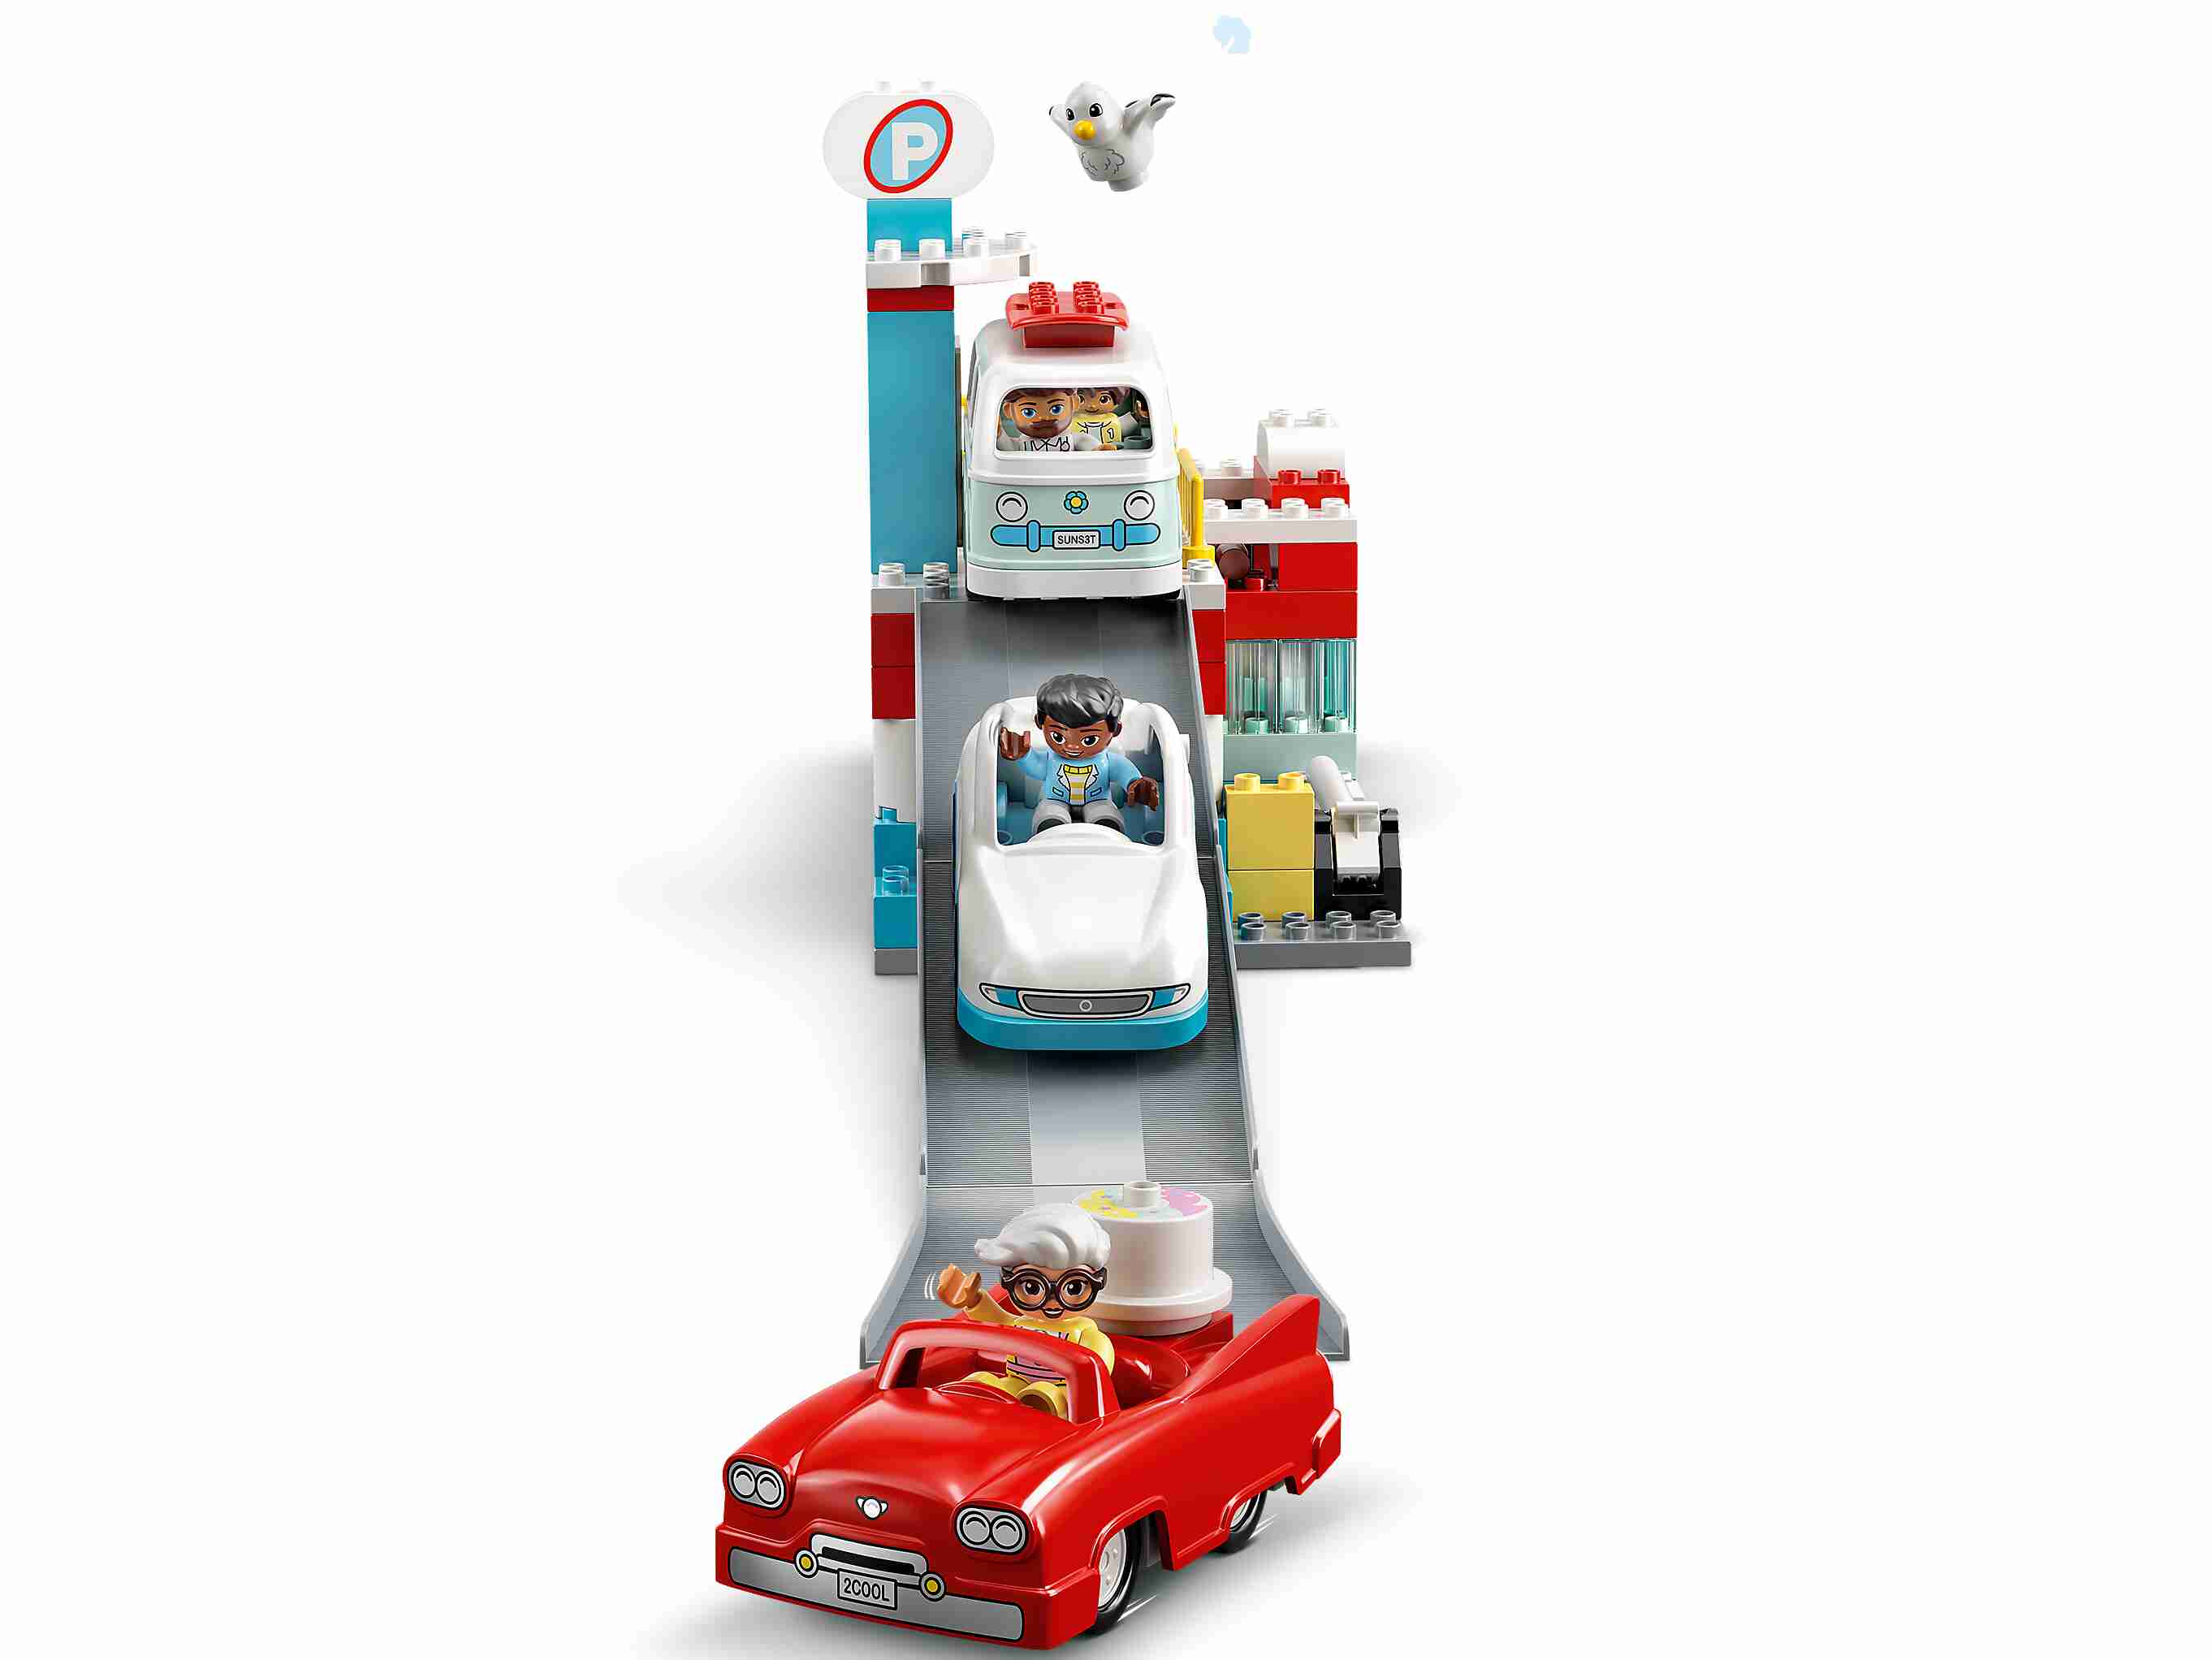 LEGO 10948 DUPLO Parkhaus mit Autowaschanlage, Spielzeugautos, Parkhaus ab 2 J.